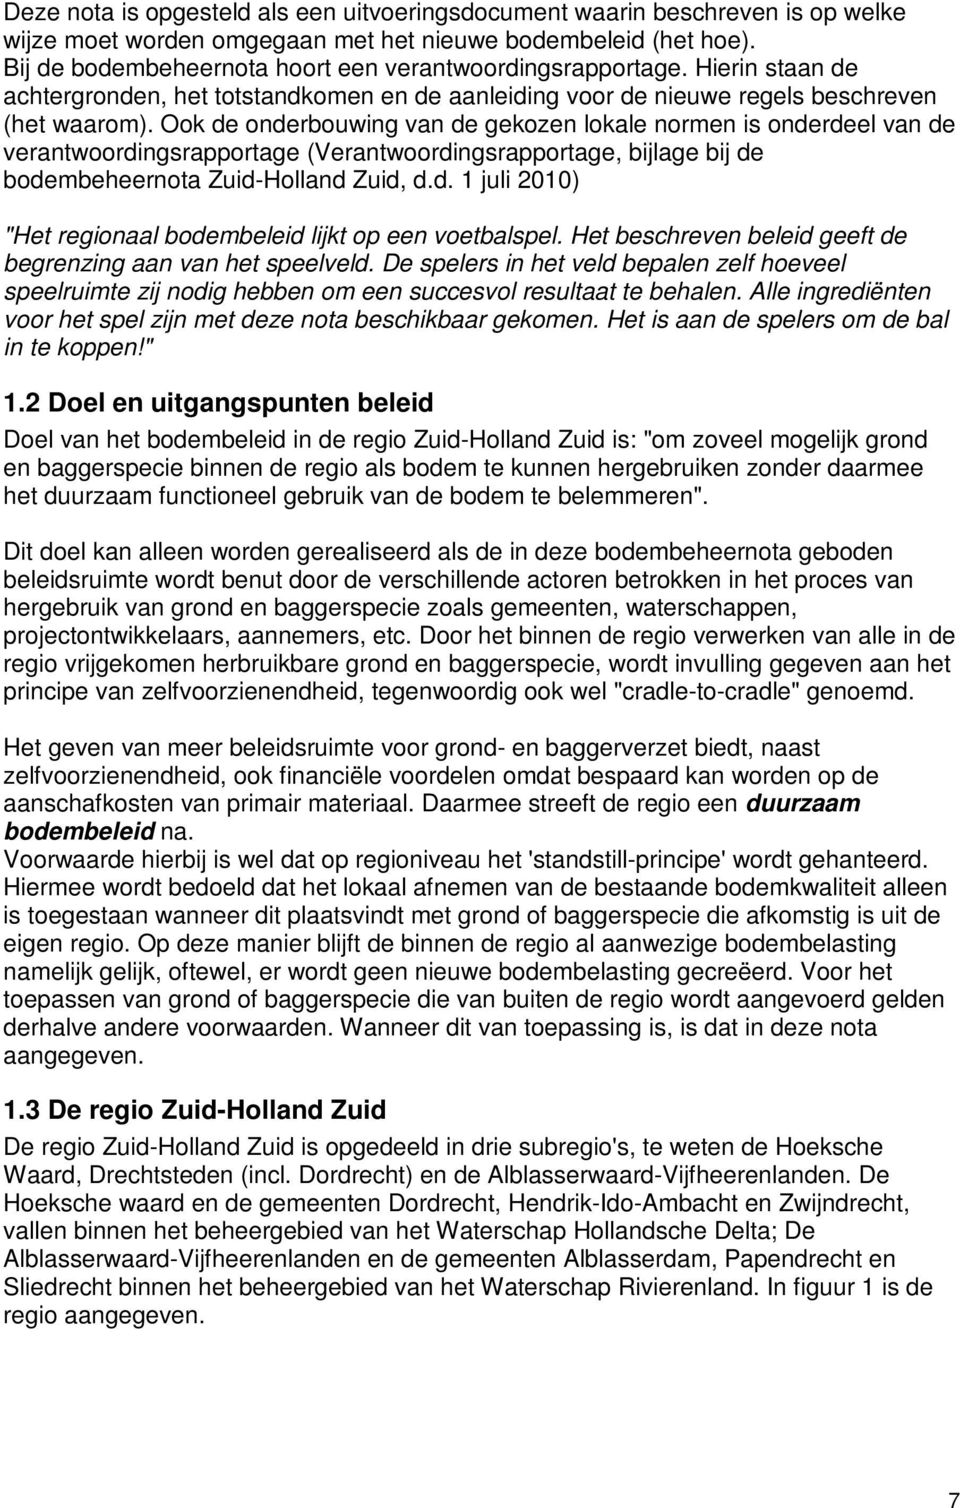 Ook de onderbouwing van de gekozen lokale normen is onderdeel van de verantwoordingsrapportage (Verantwoordingsrapportage, bijlage bij de bodembeheernota Zuid-Holland Zuid, d.d. 1 juli 2010) "Het regionaal bodembeleid lijkt op een voetbalspel.